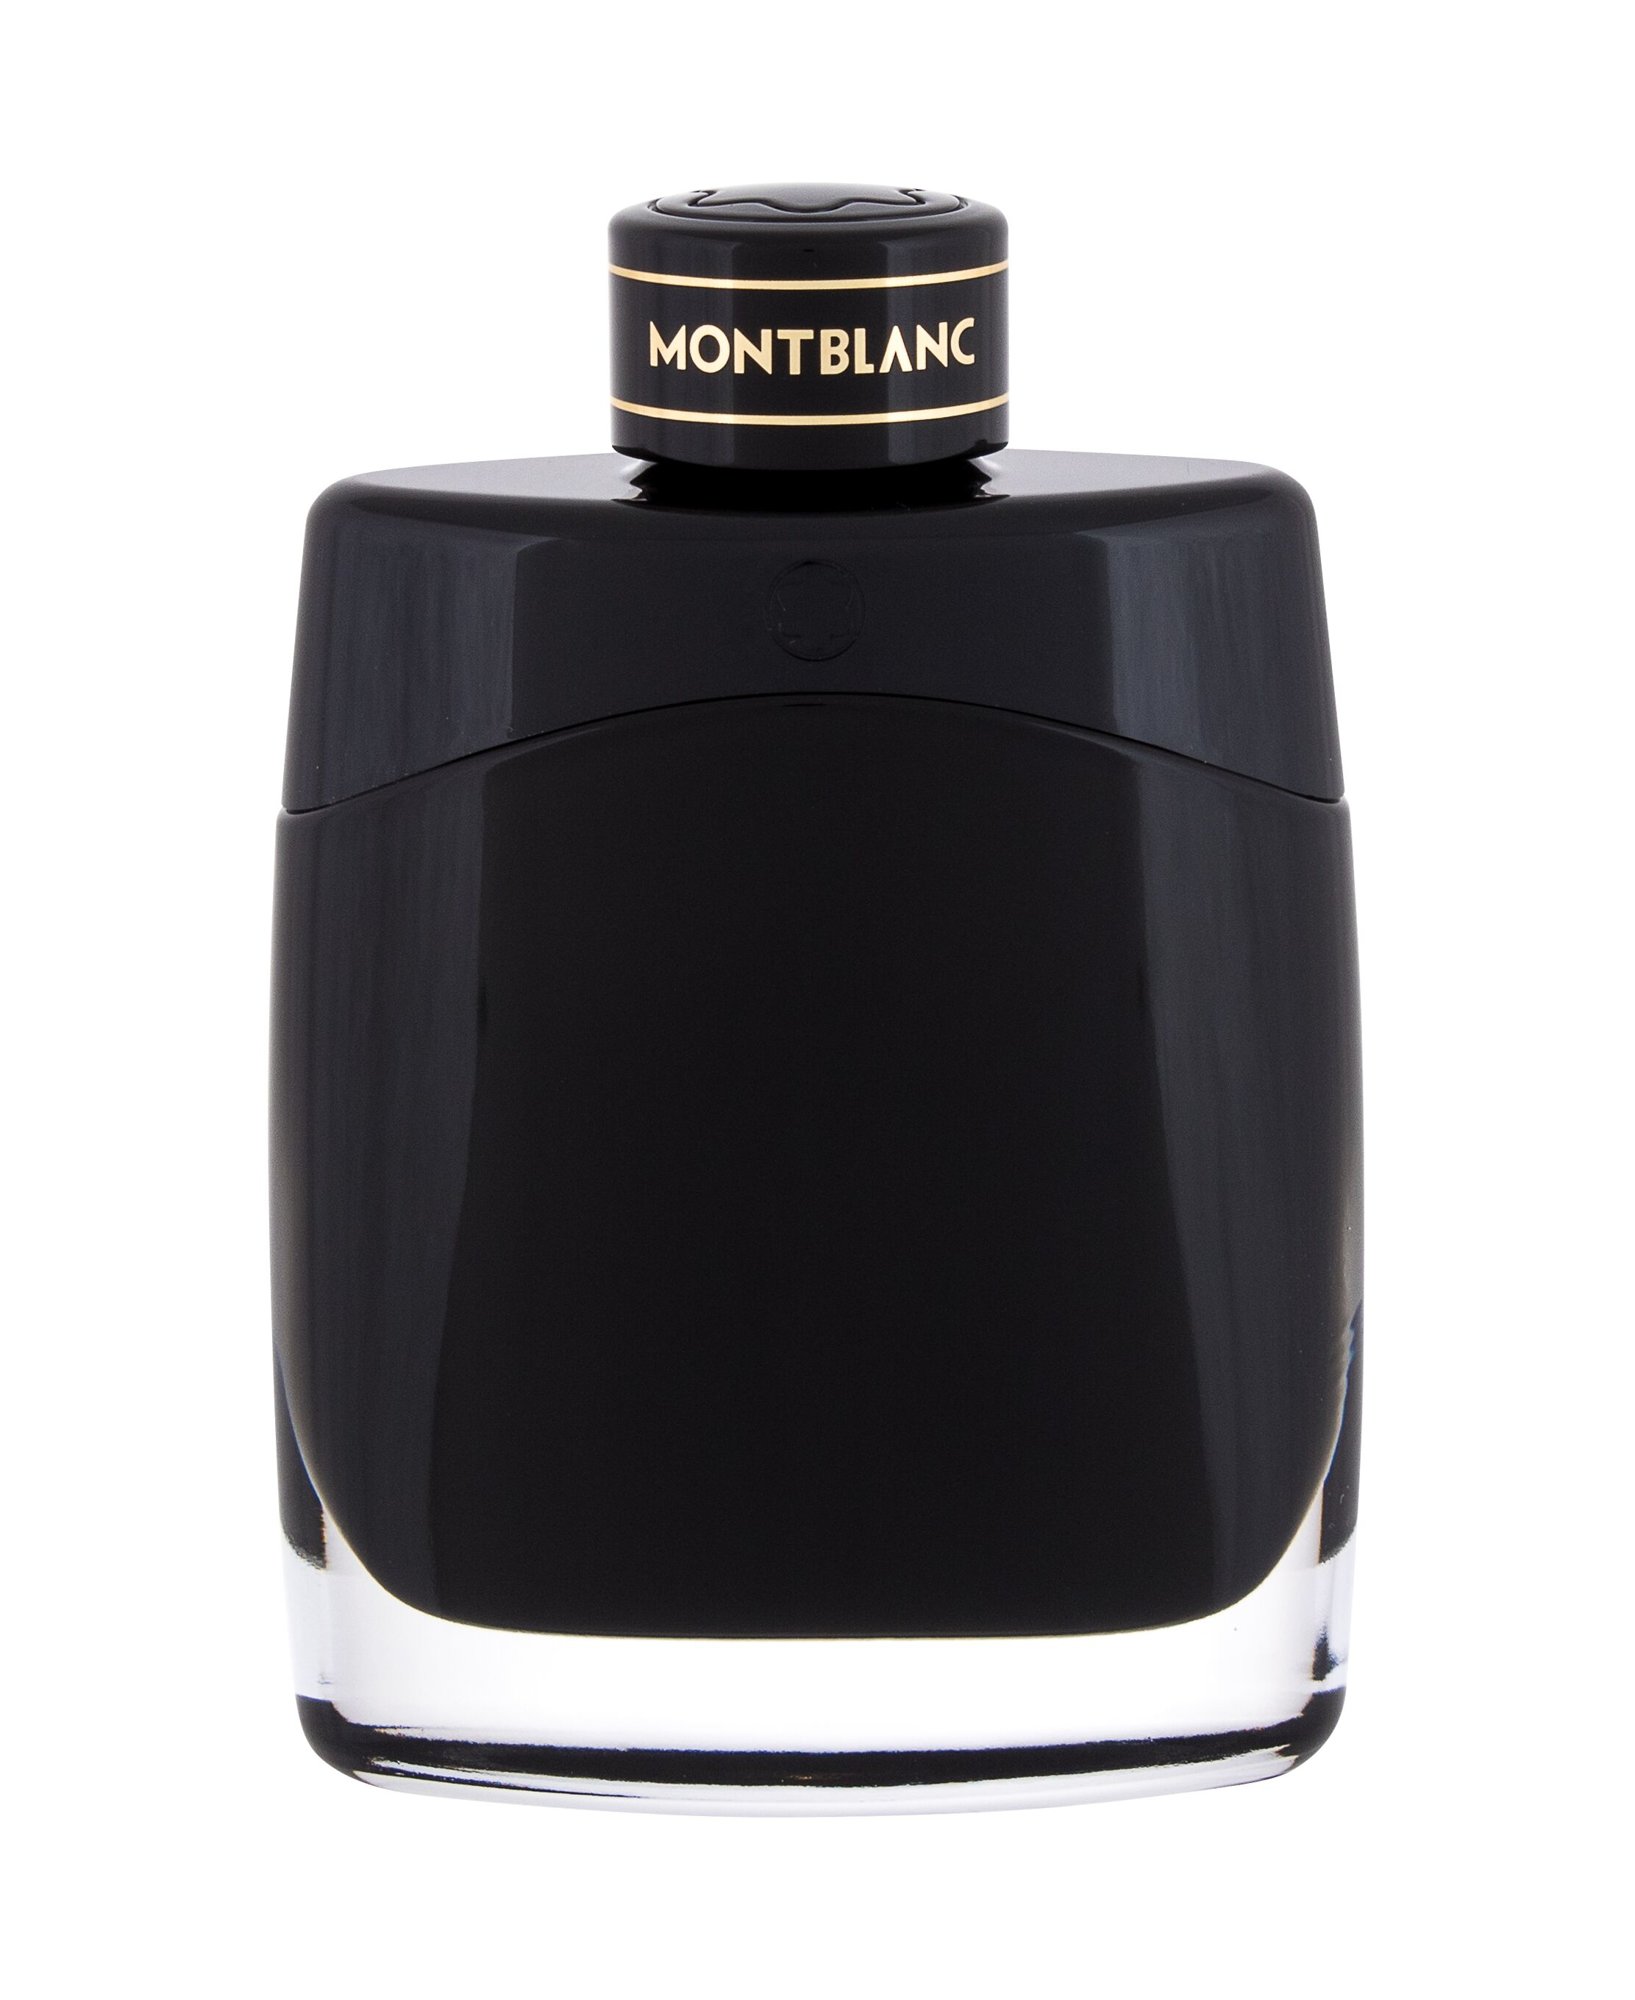 Montblanc legend eau de parfum ddr 3 2133 mhz